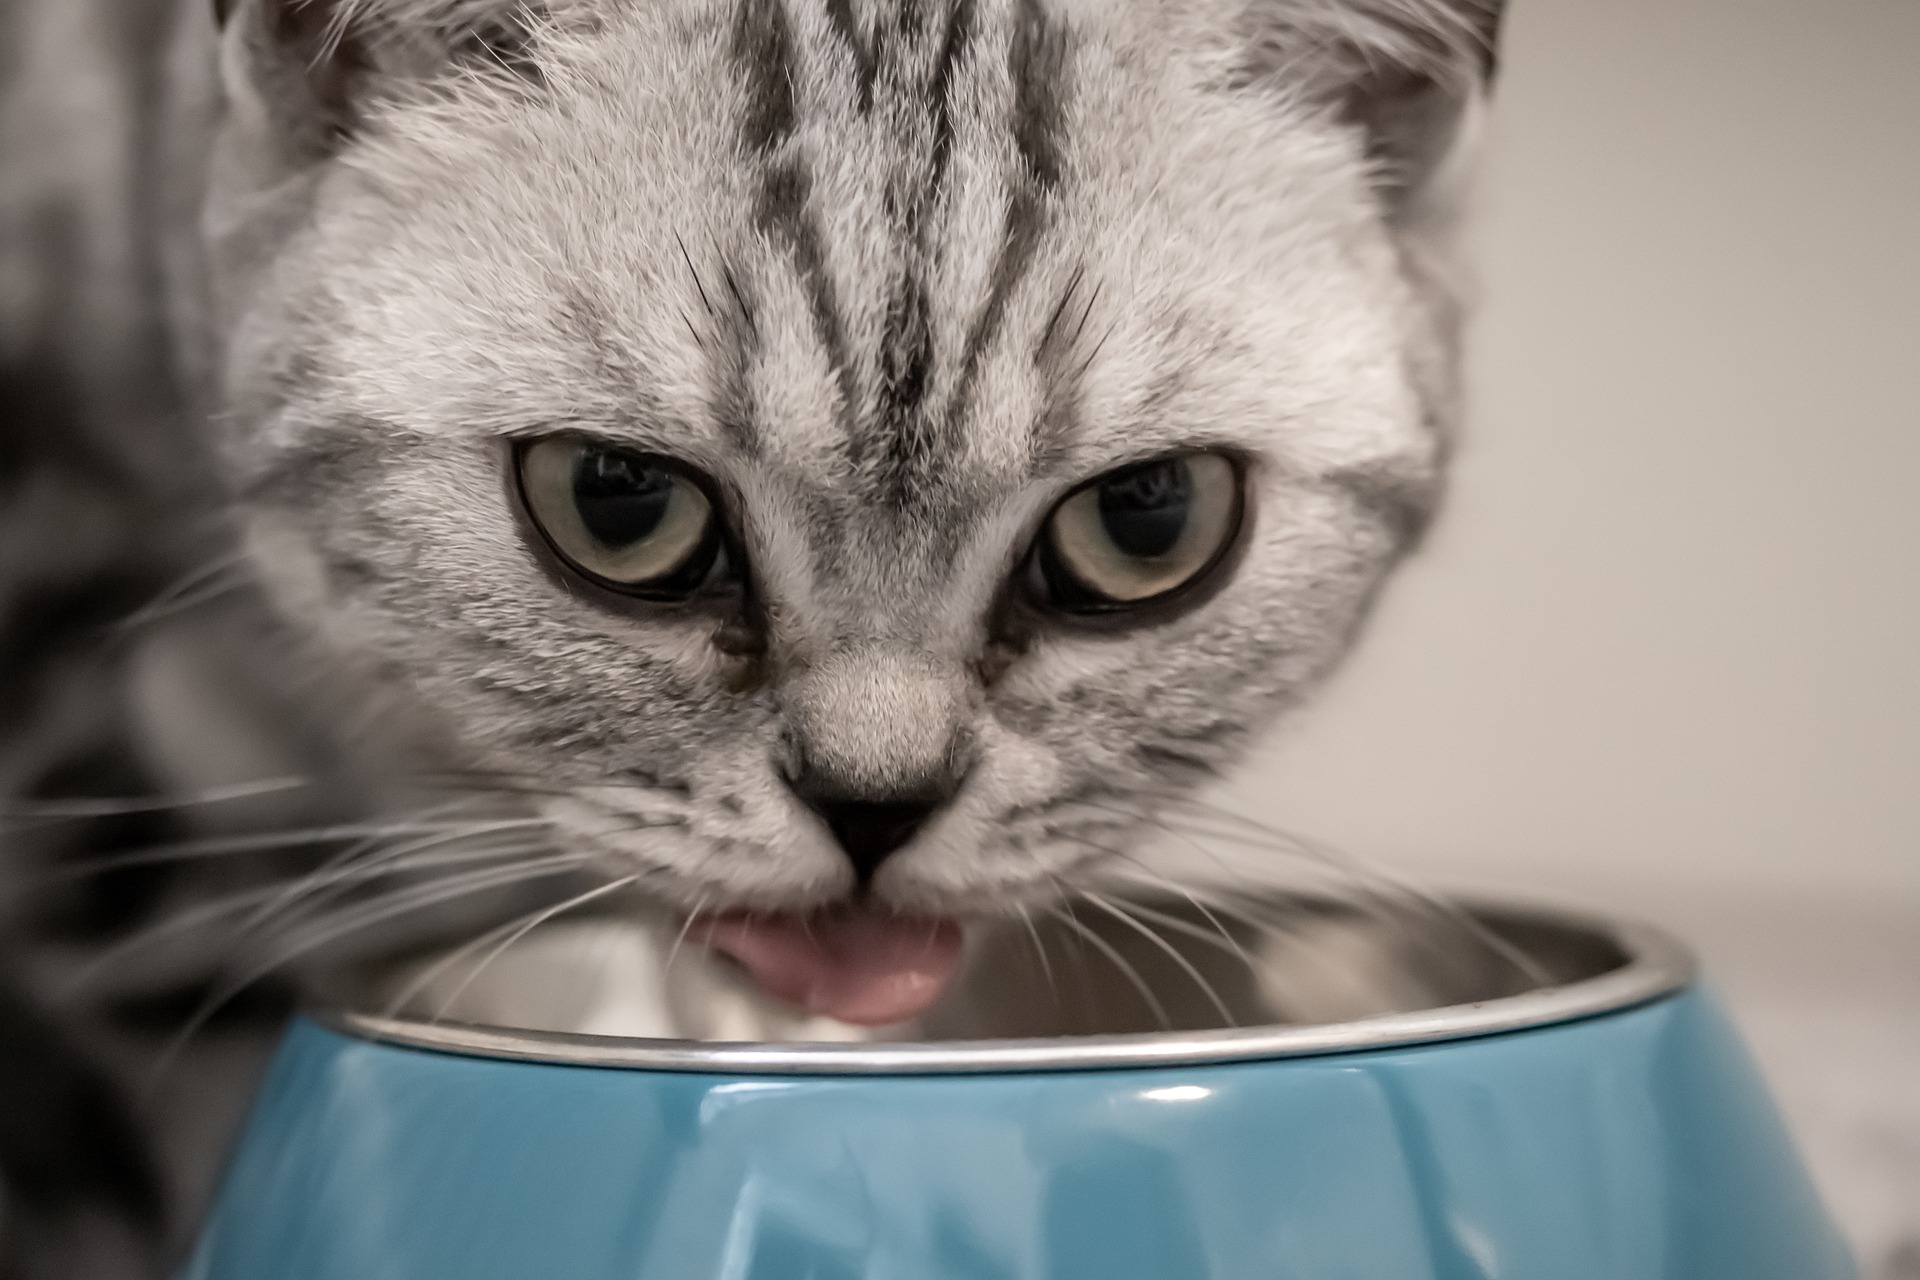 Compléments alimentaires pour chats - quand devriez-vous compléter l’alimentation de votre chat?